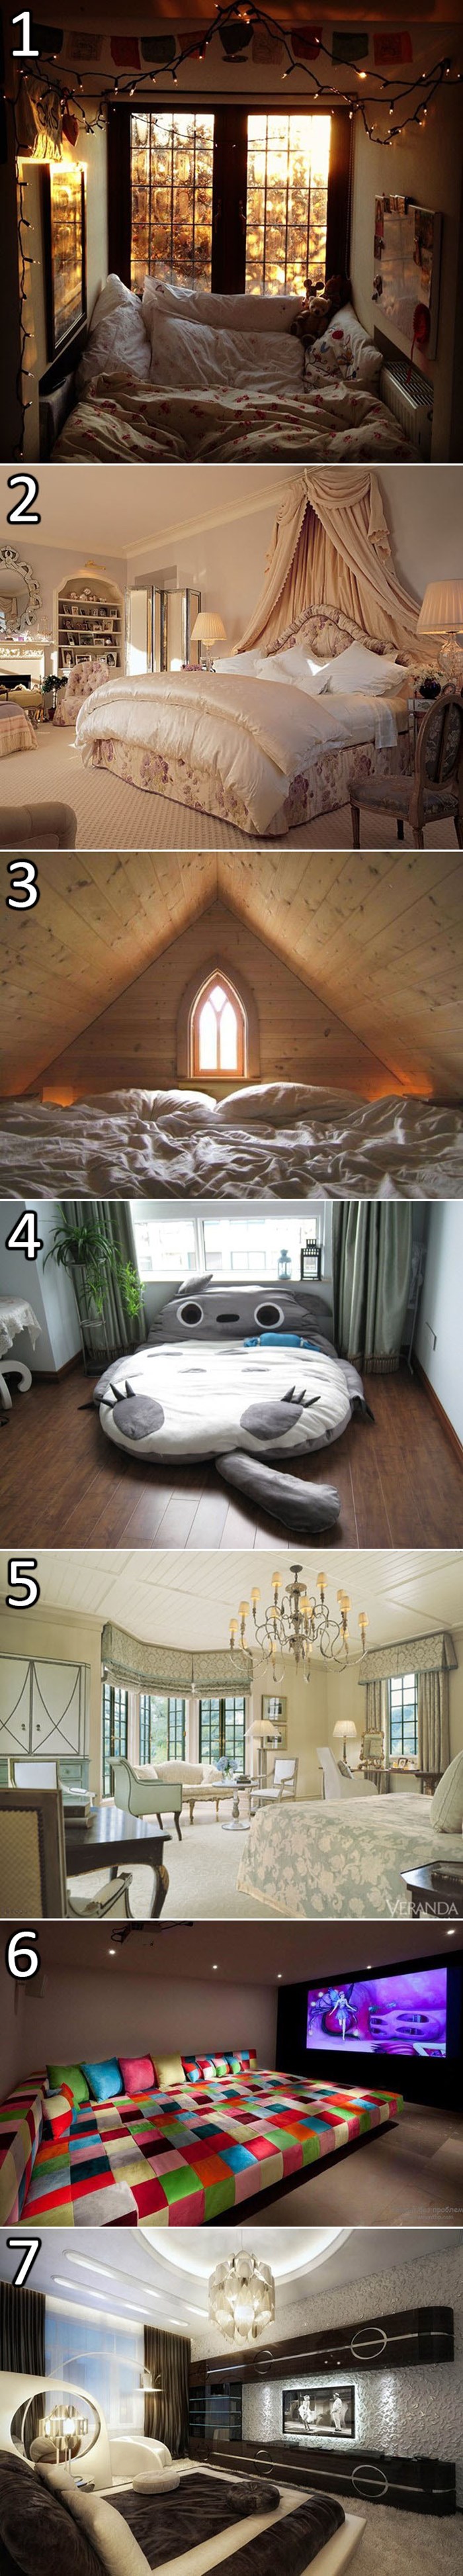 U kojoj od ovih soba biste se voljeli probuditi sutra?